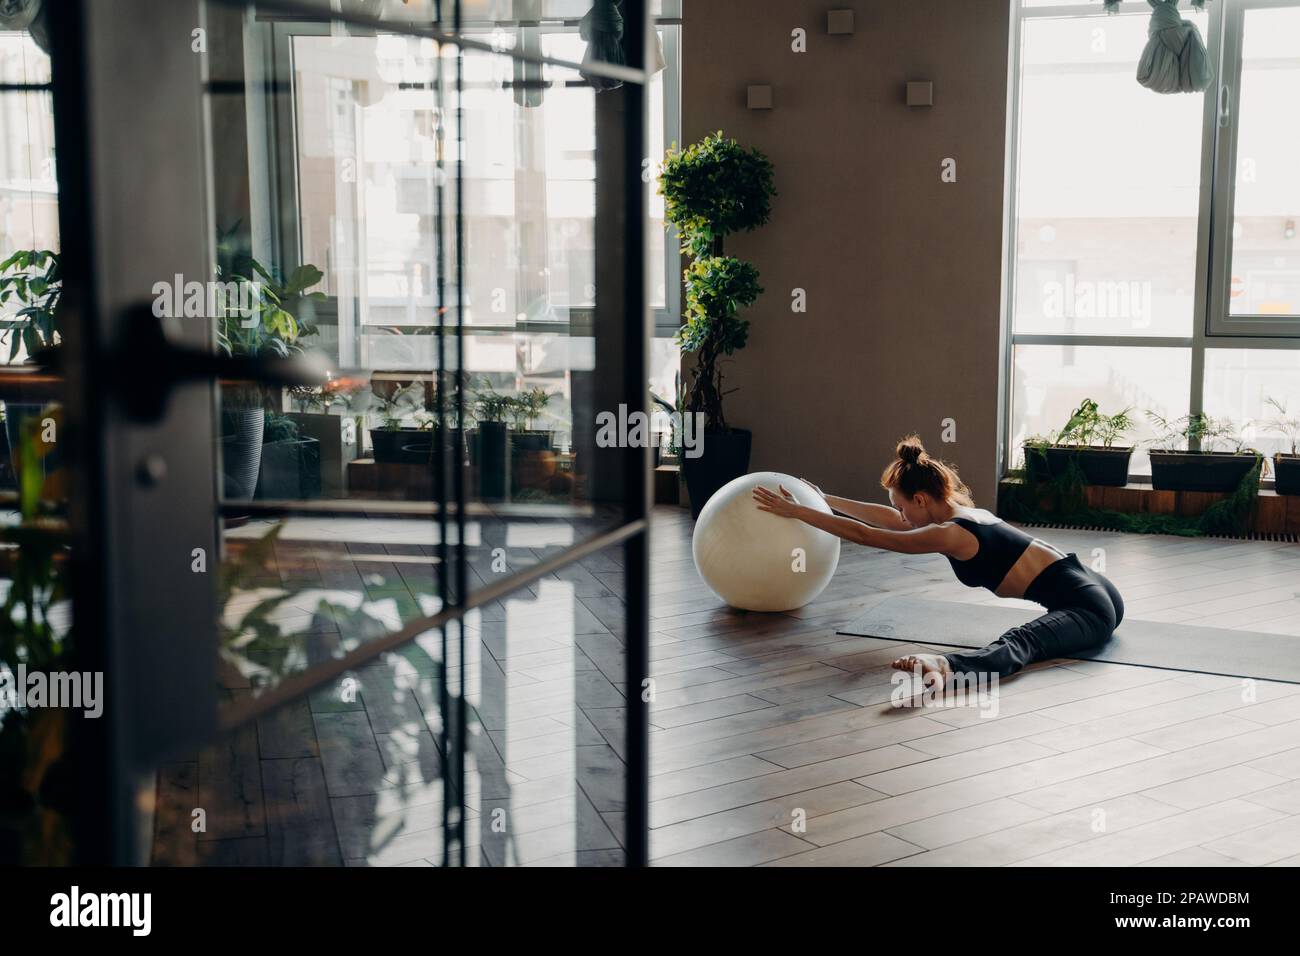 Sportliche, flexible Frau mit Haaren im Brötchen, die Beine streckt, während sie im Fitnessstudio in geteilter Position auf einer Yogamatte sitzt, mit Fitnessball und entspannendem Heck Stockfoto